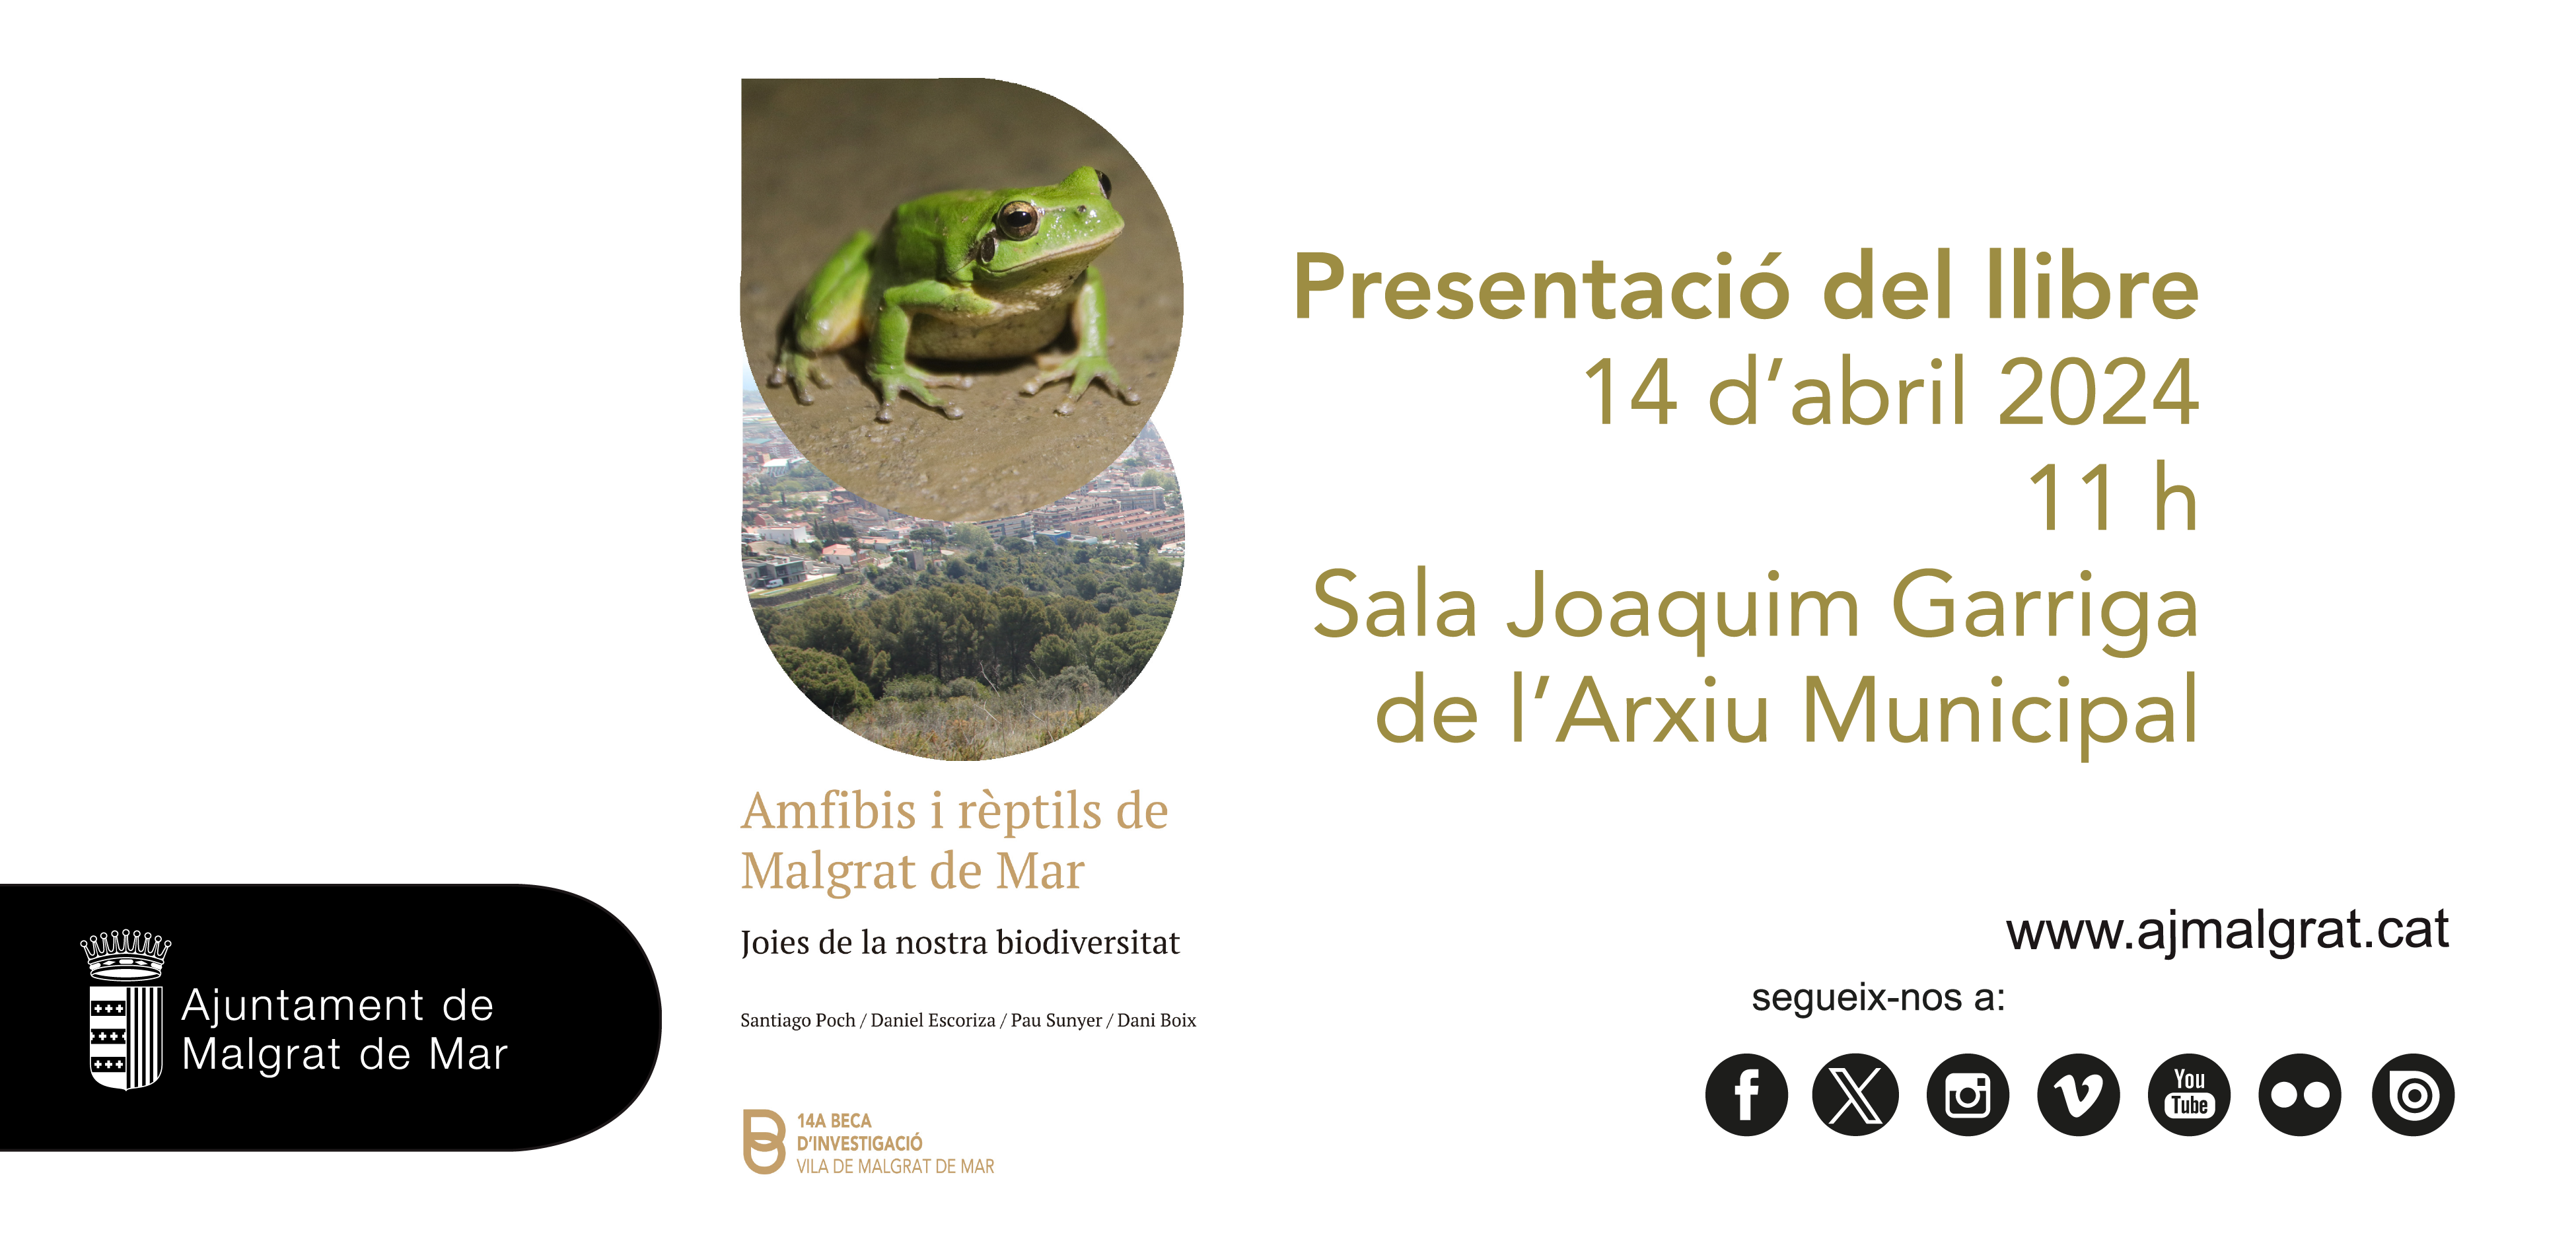 L'Arxiu presentarà el llibre sobre amfibis i rèptils de la Beca d'Investigació el 14 d'abril